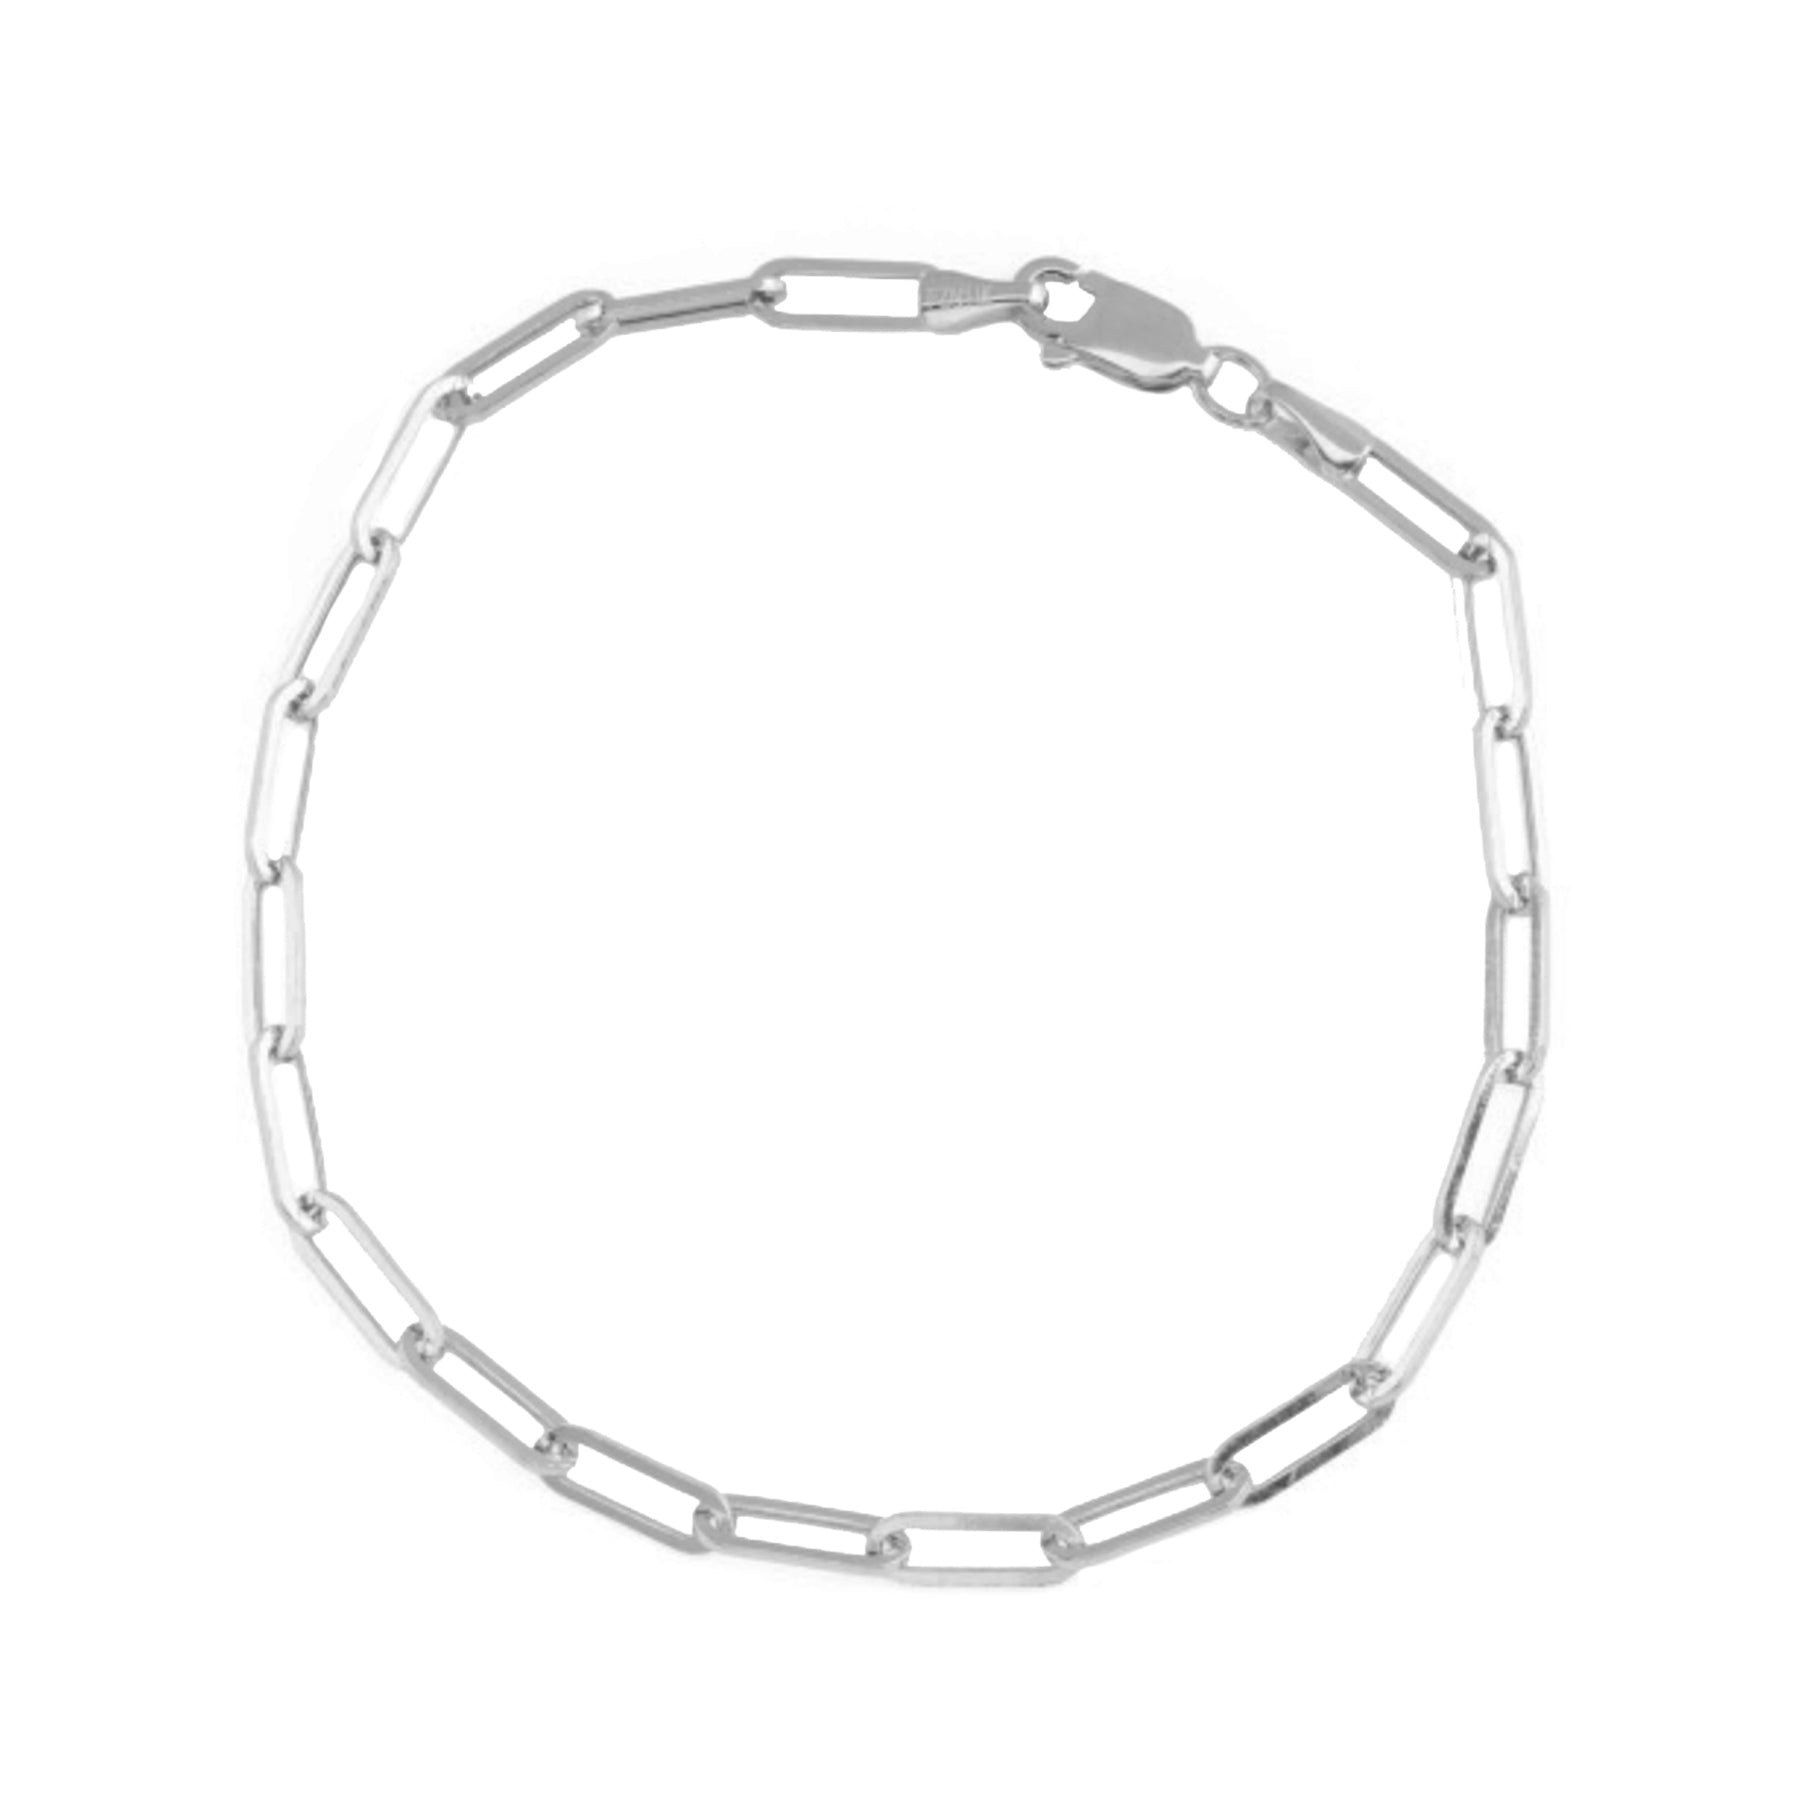 Silver Paper Clip Chain Bracelet